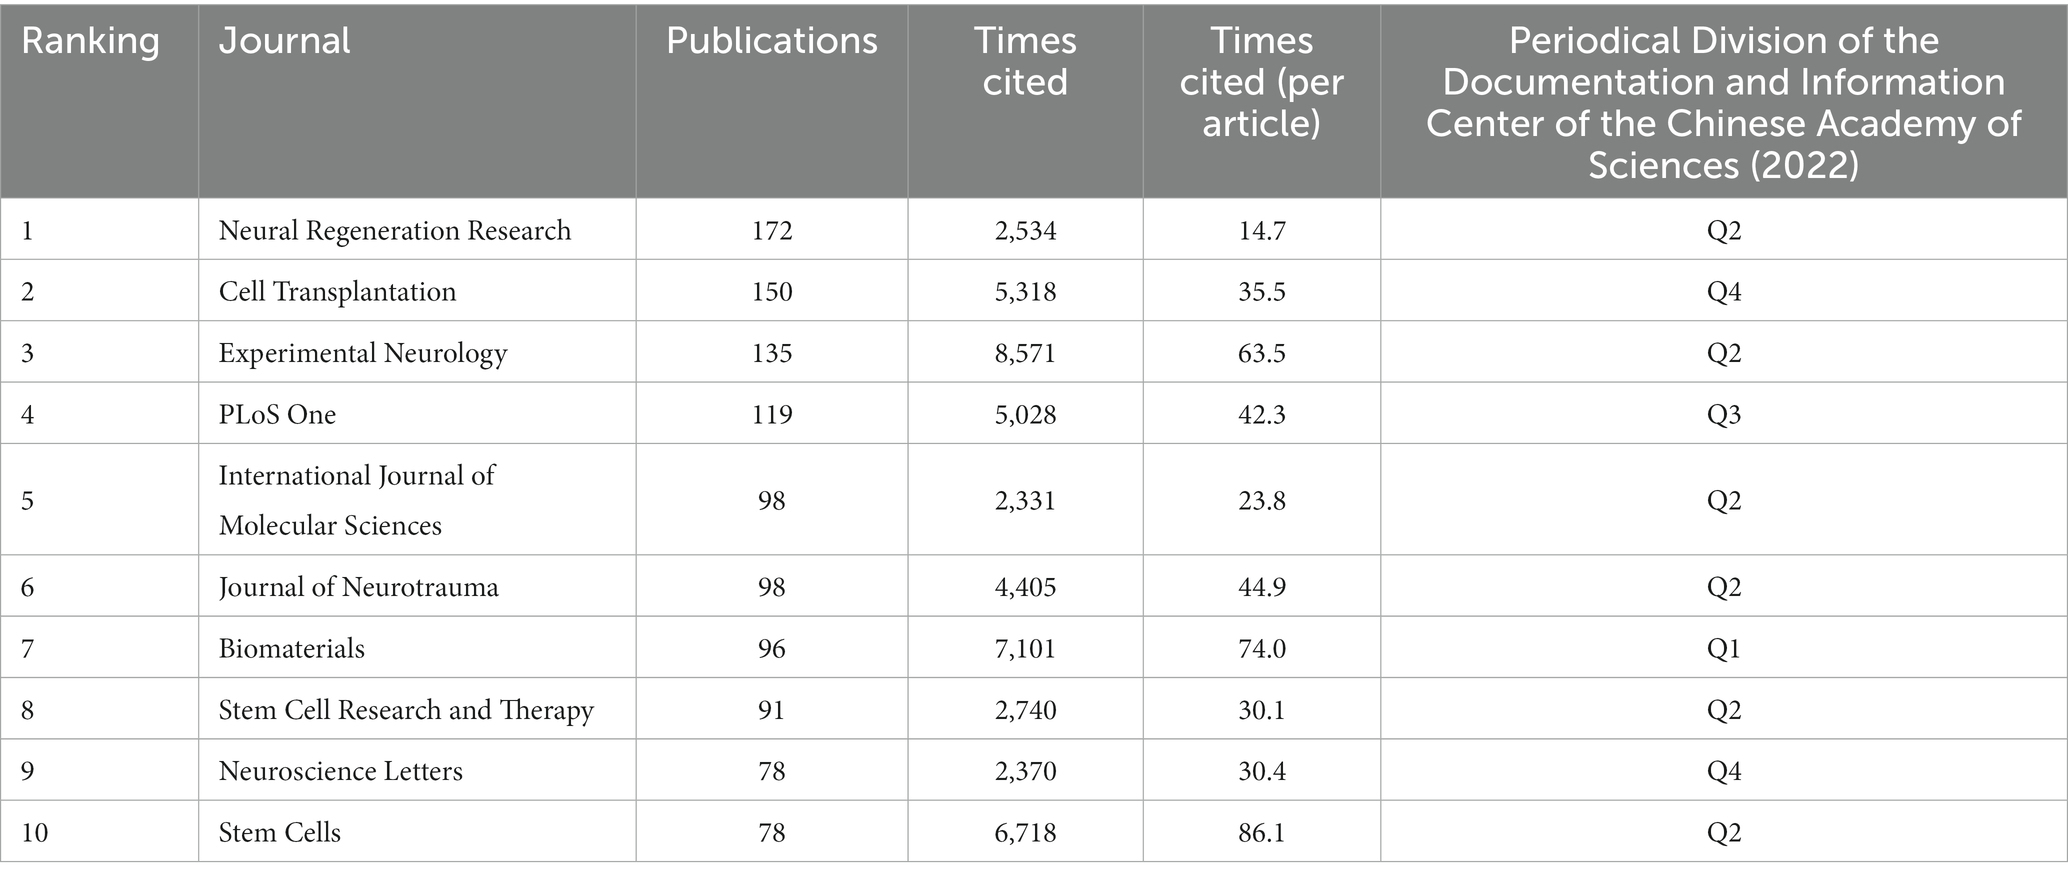 表格1：2003年至2022年发表文献最多的前10名期刊